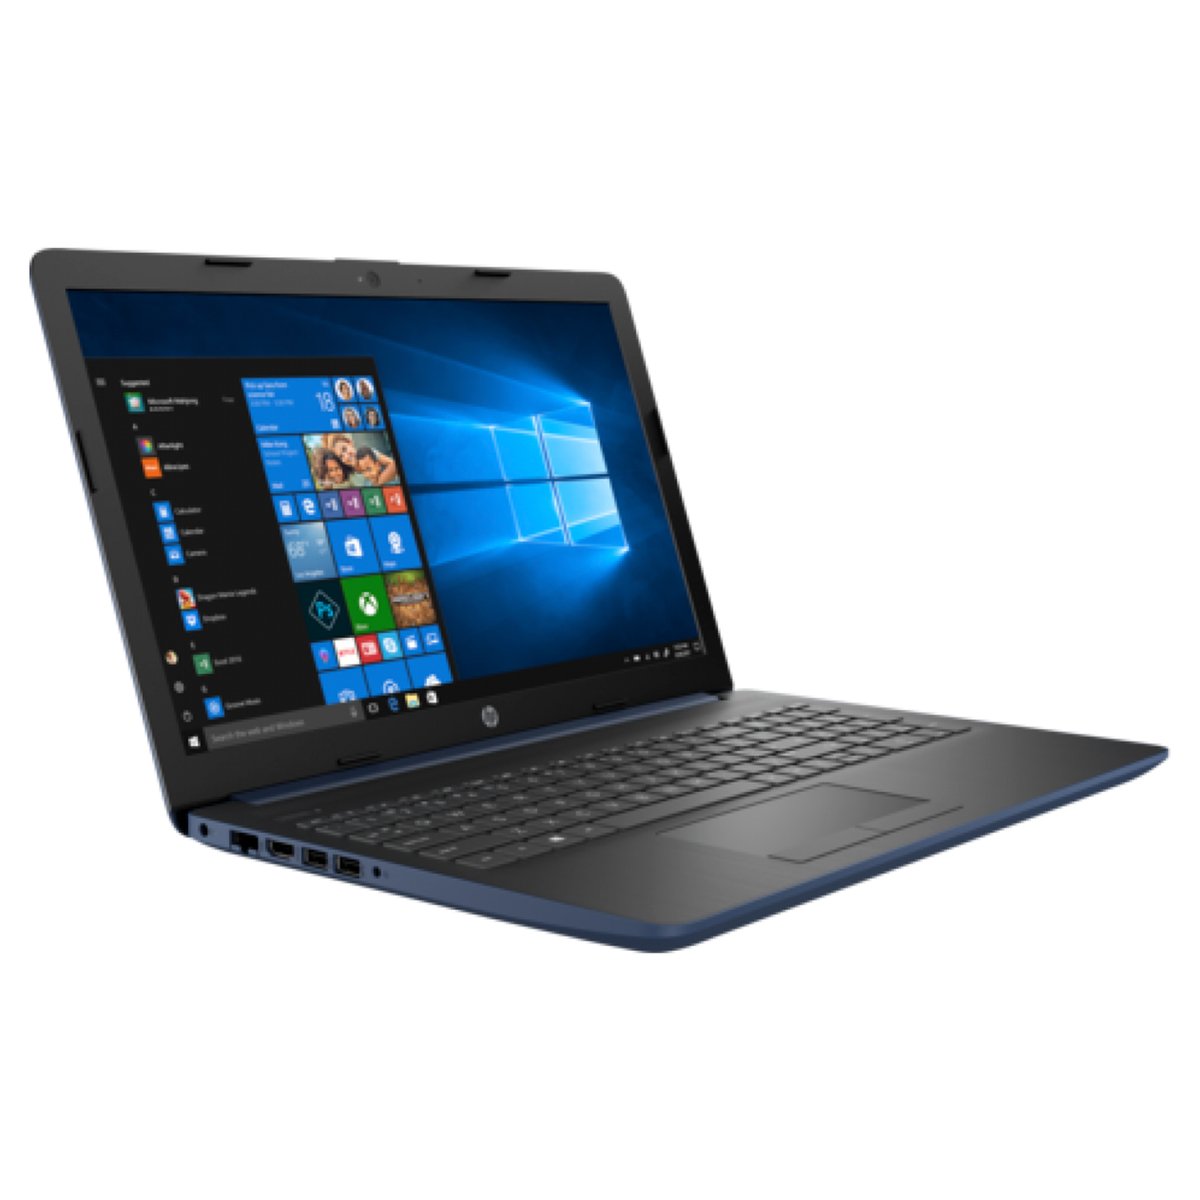 HP Notebook 15-DA0113 Core i3-7020 Blue